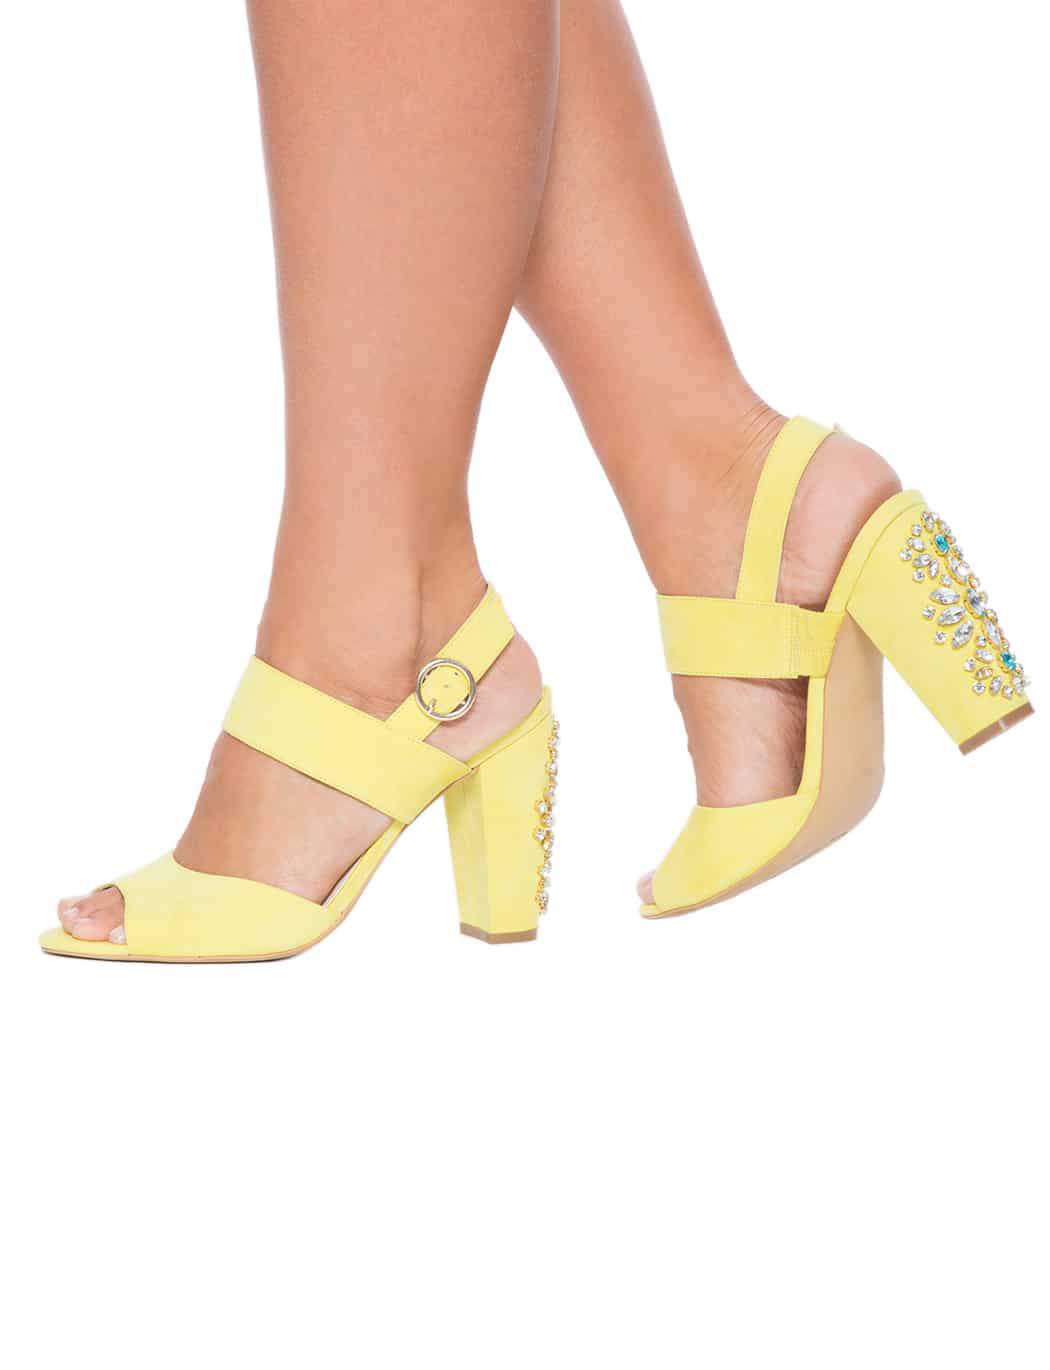 Lizzy block heel model